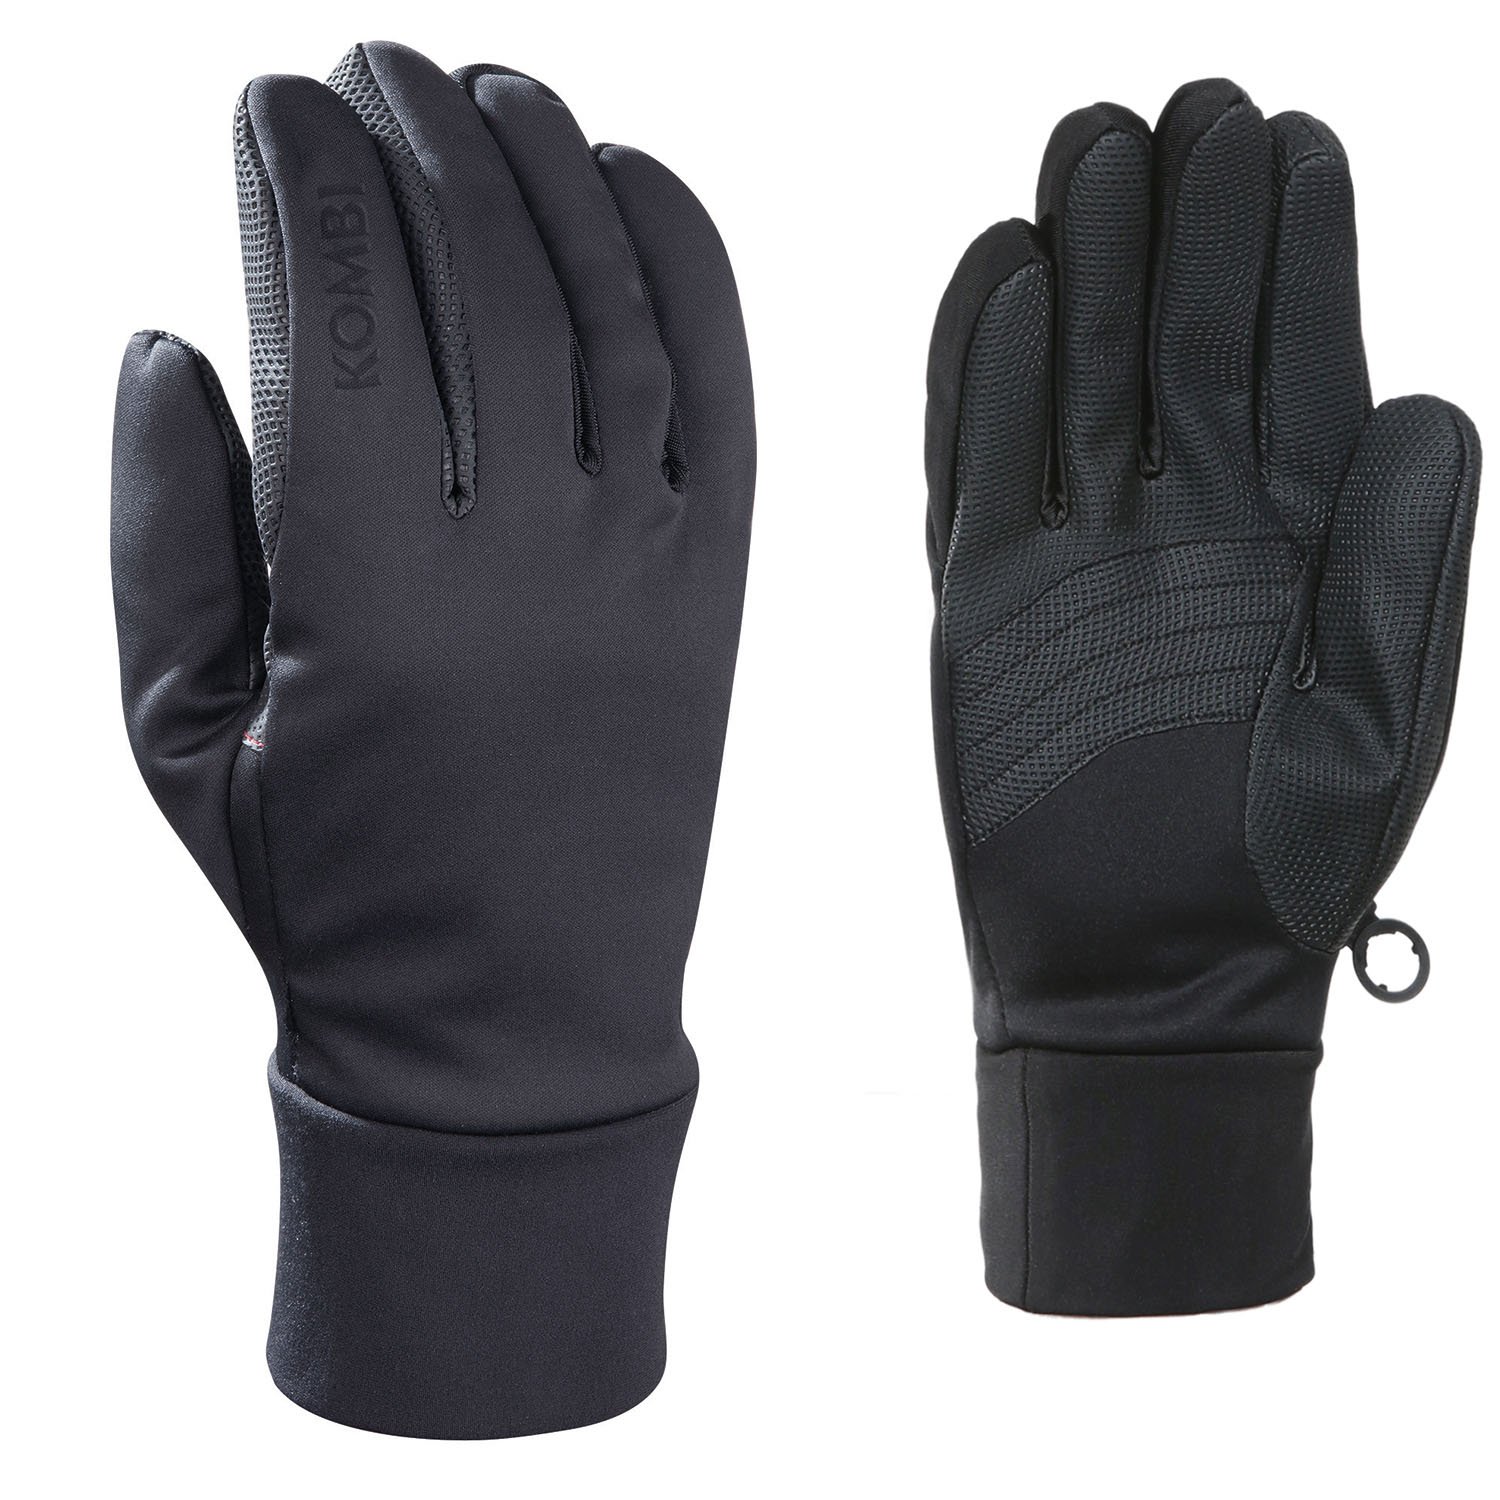 Kombi Men’s Winter Multi-Tasker Gloves BLACK